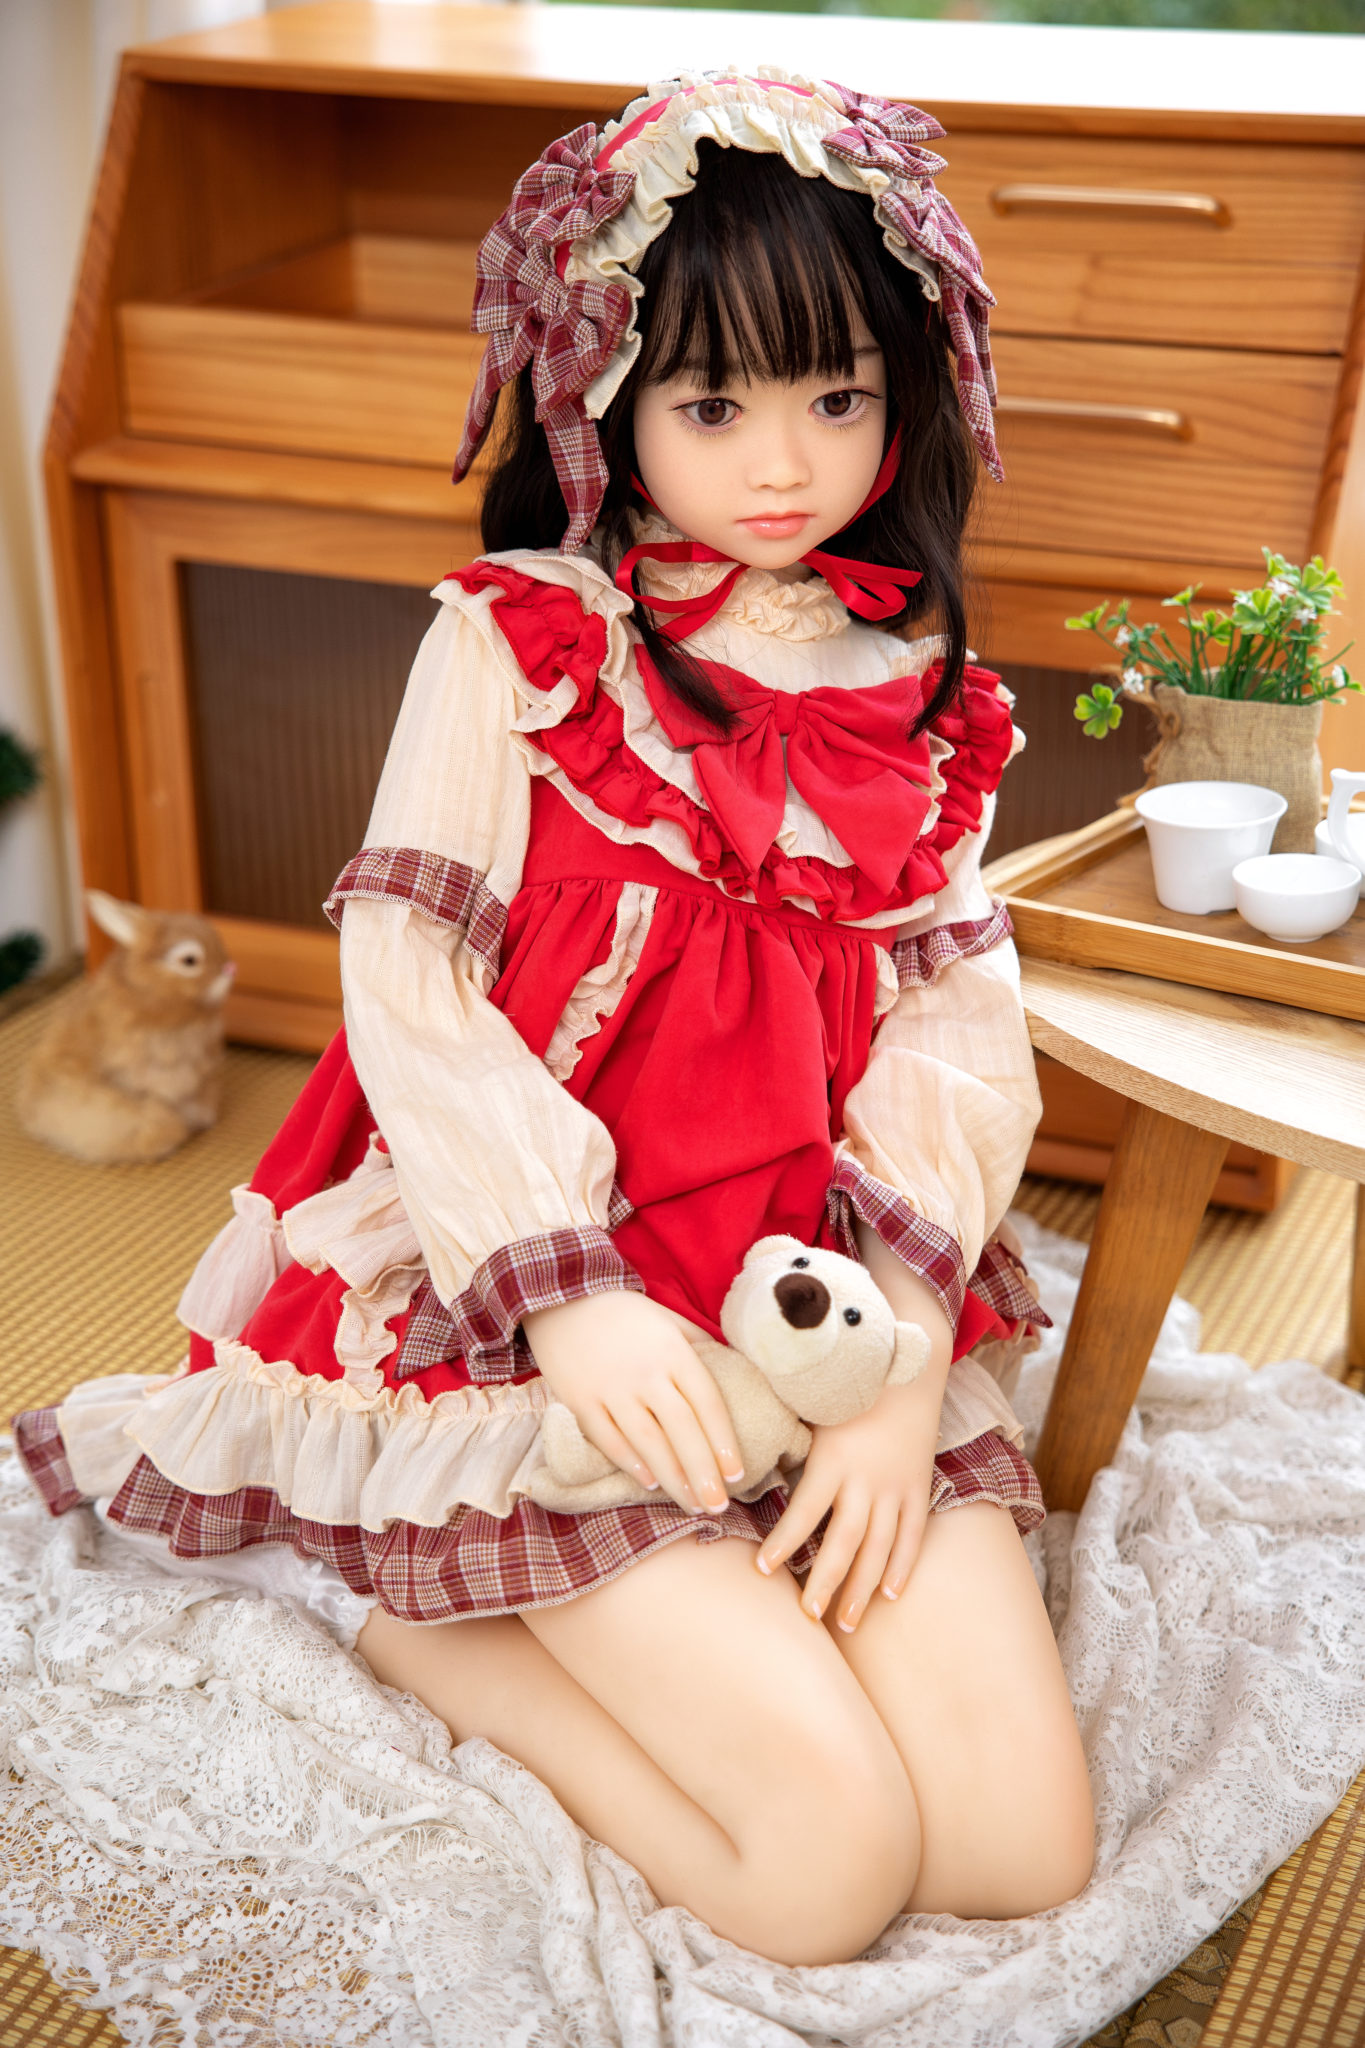 Alaia Cutie Doll 4′ 1 125cm Cup B Mysmartdoll A Marketplace For Dolls